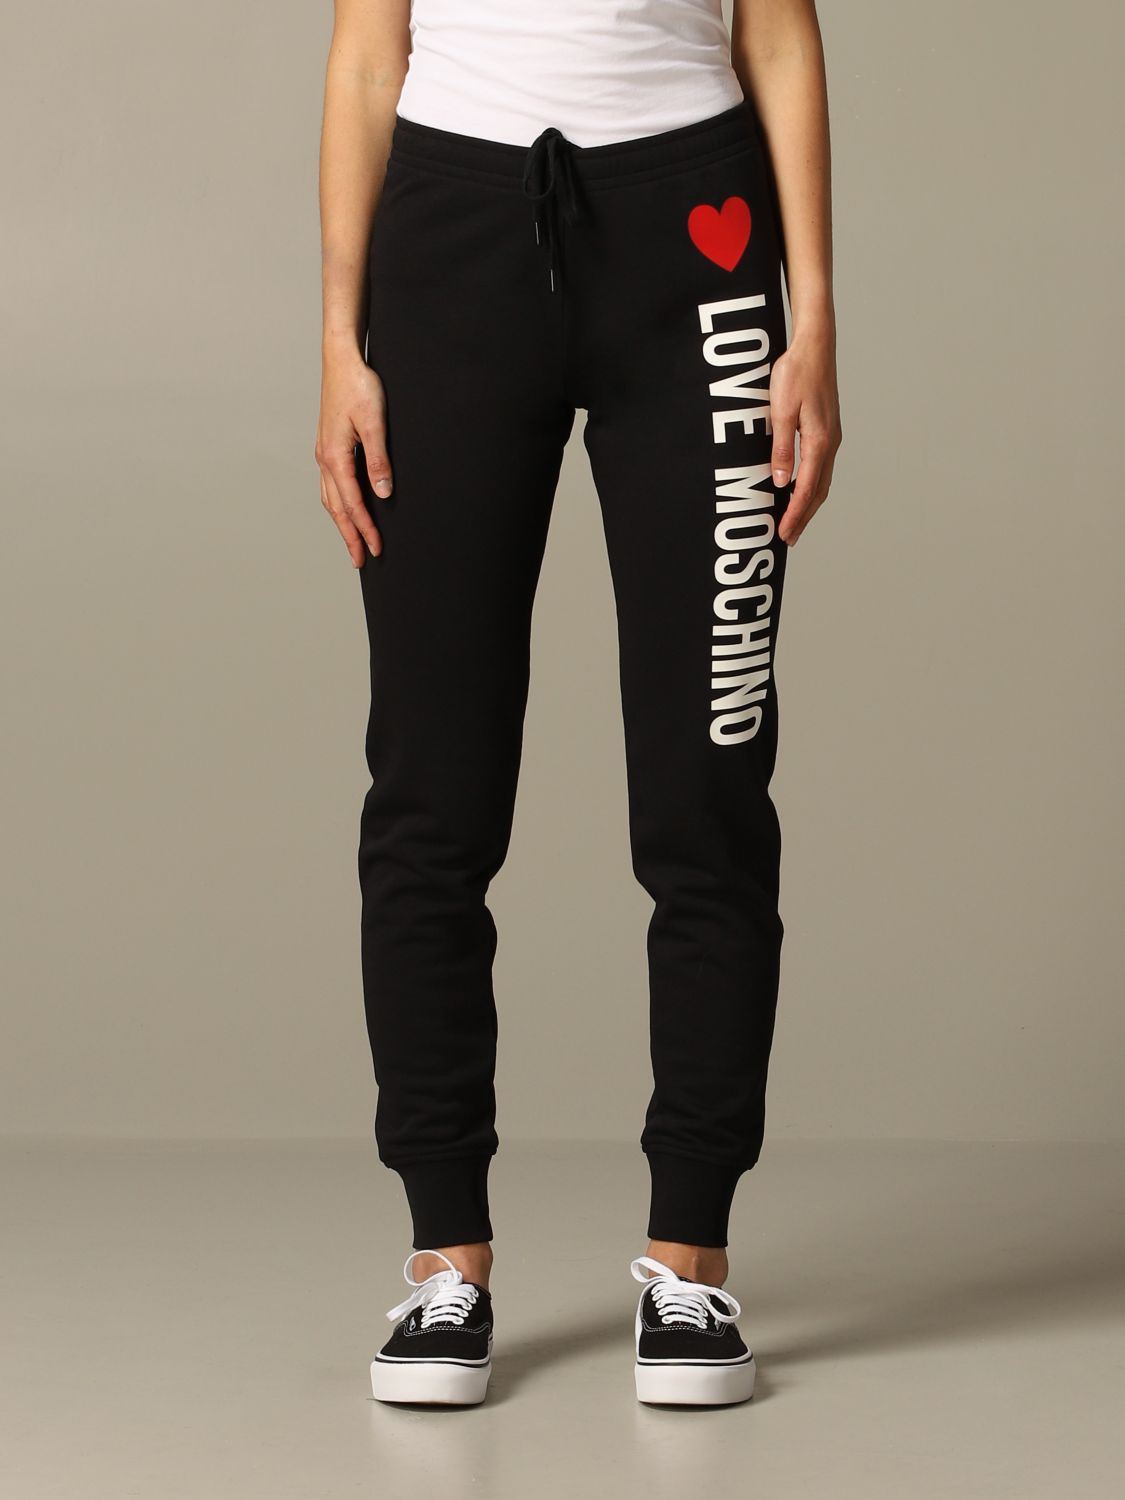 love moschino women's pants